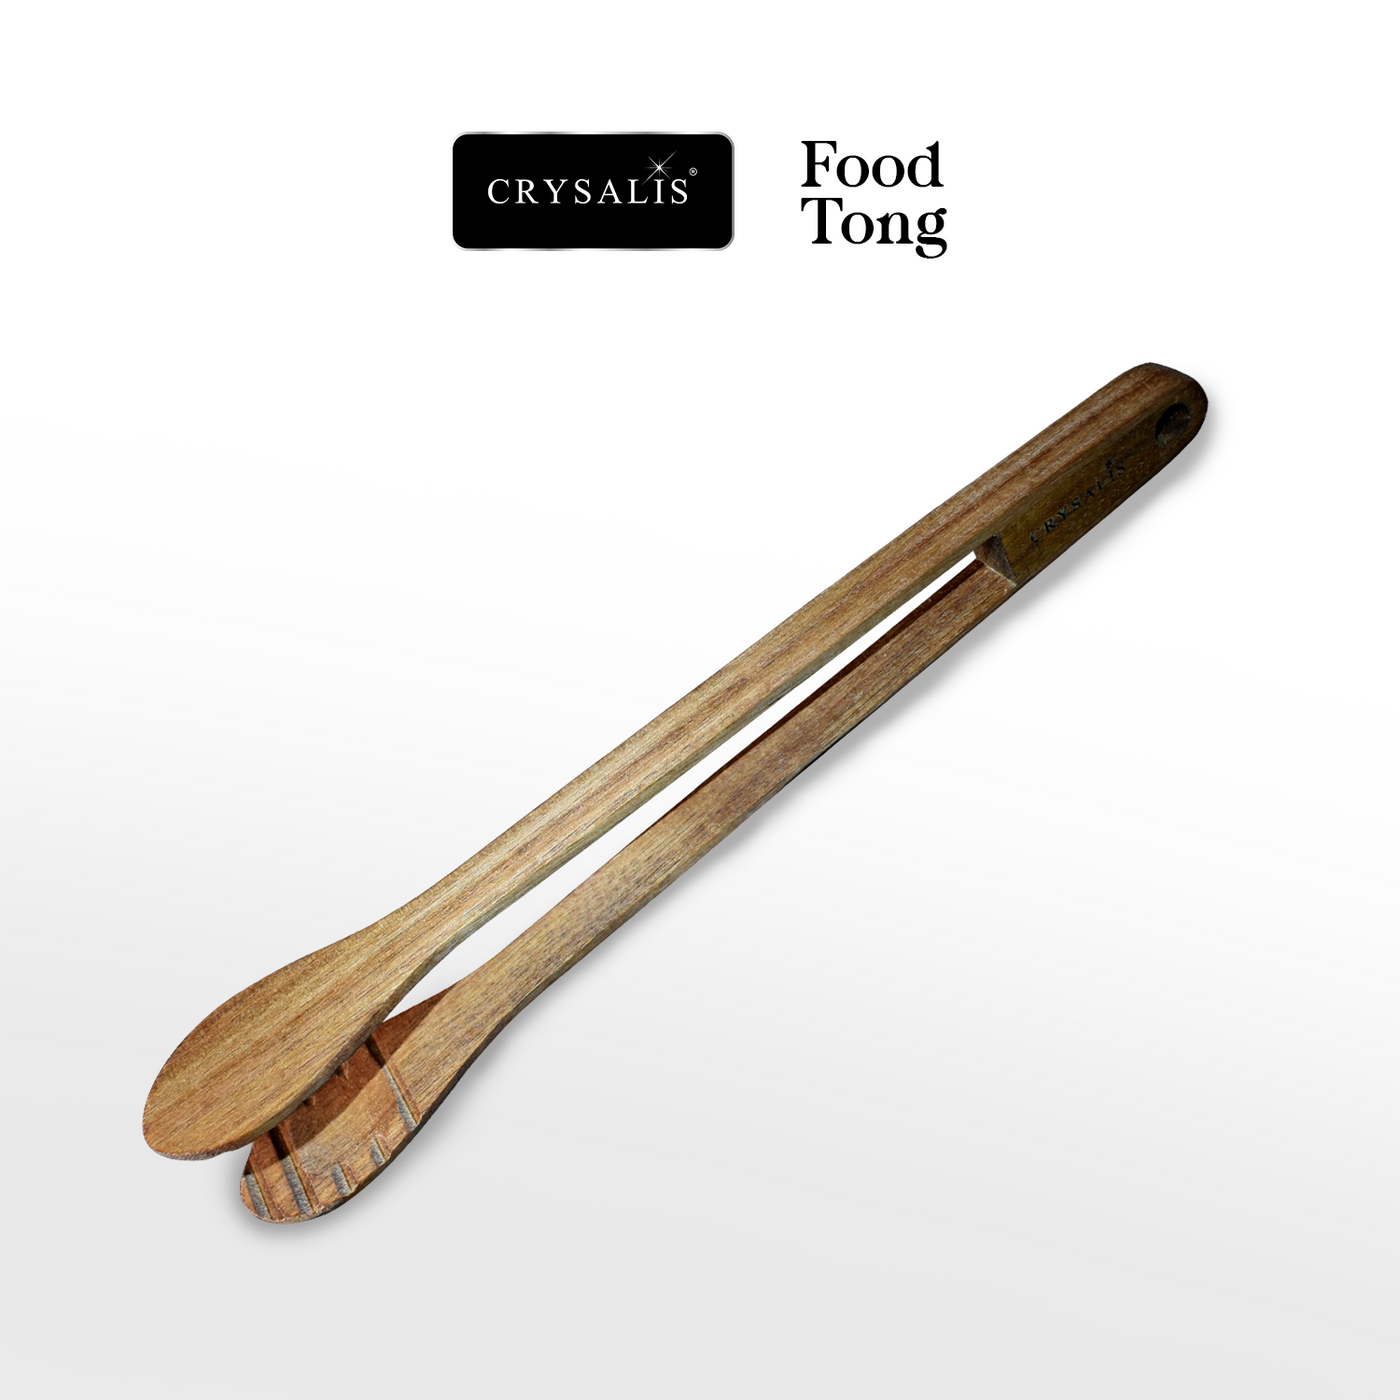 CRYSALIS PREMIUM Food Tong Food Utensils Cooking Tools - Acacia Wood